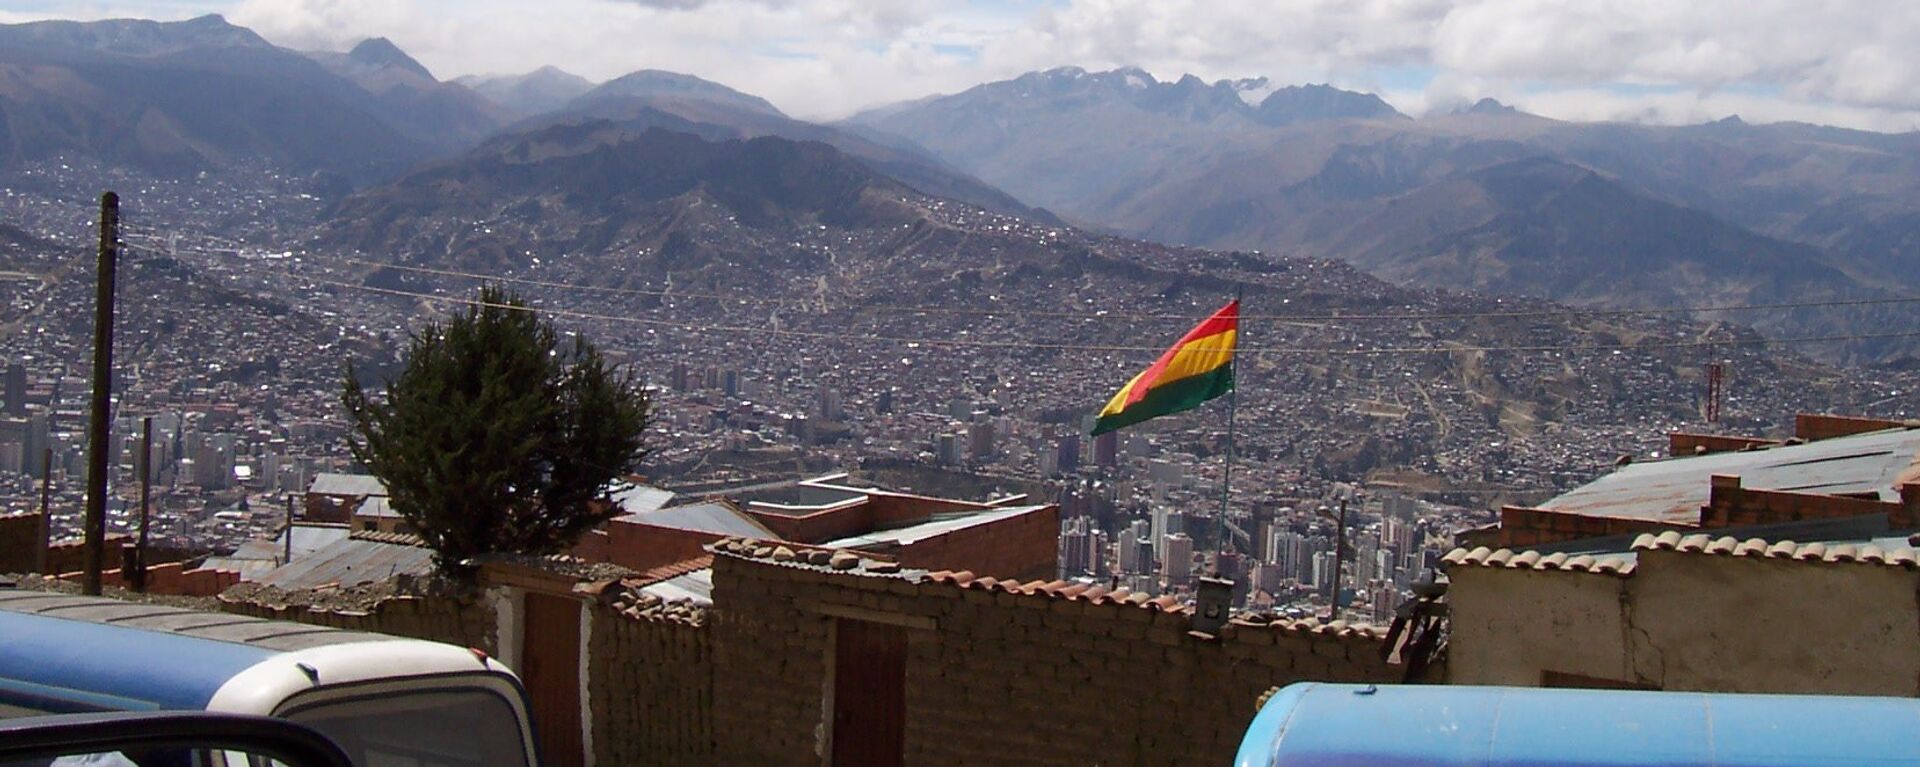 Bandera de Bolivia - Sputnik Mundo, 1920, 15.10.2021